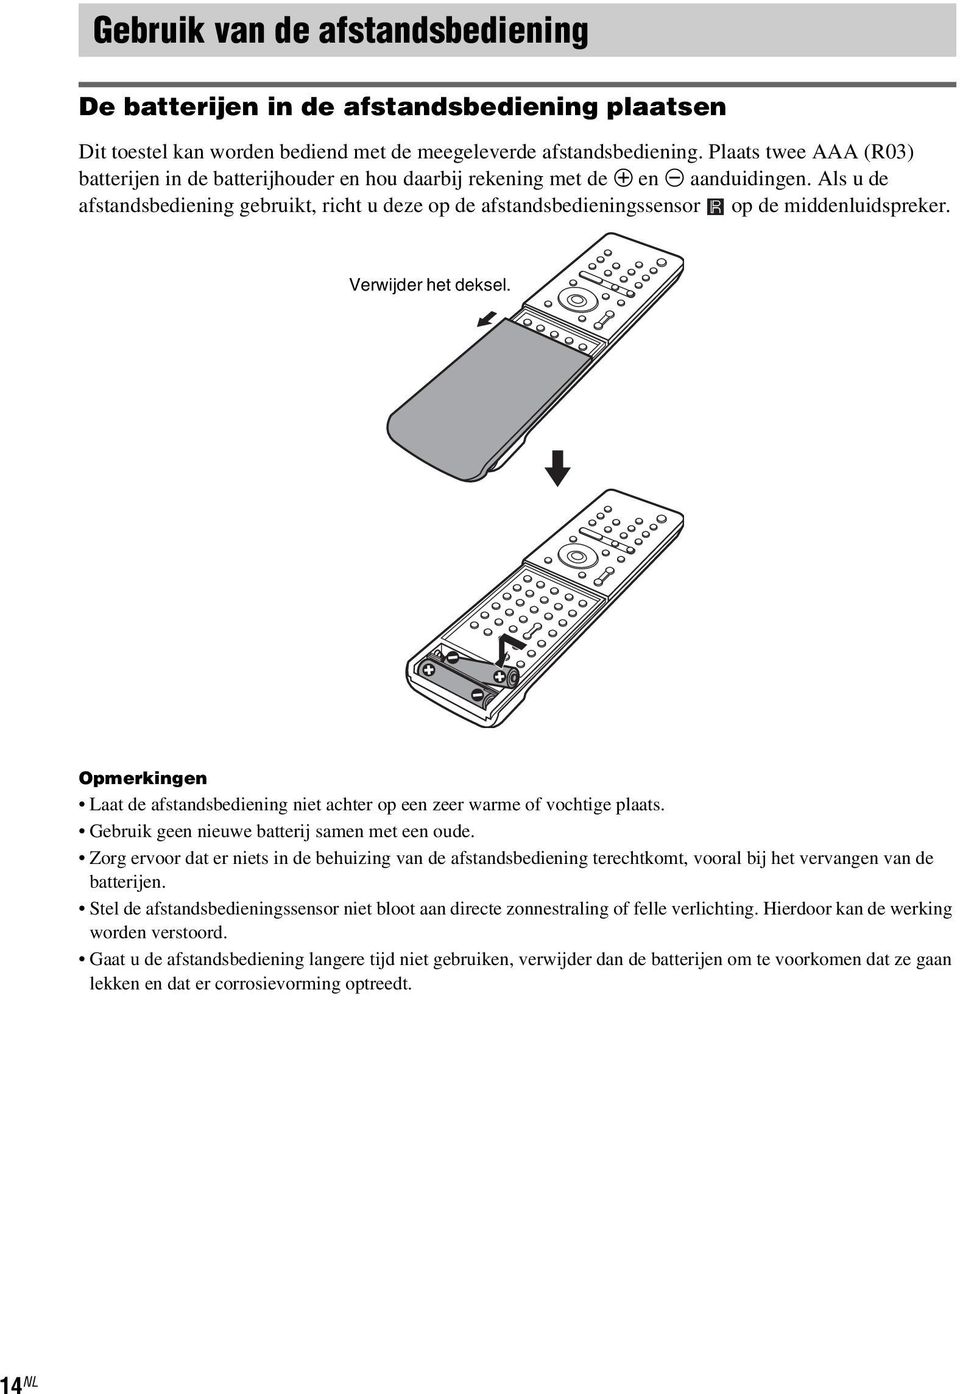 Als u de afstandsbediening gebruikt, richt u deze op de afstandsbedieningssensor op de middenluidspreker. Verwijder het deksel.